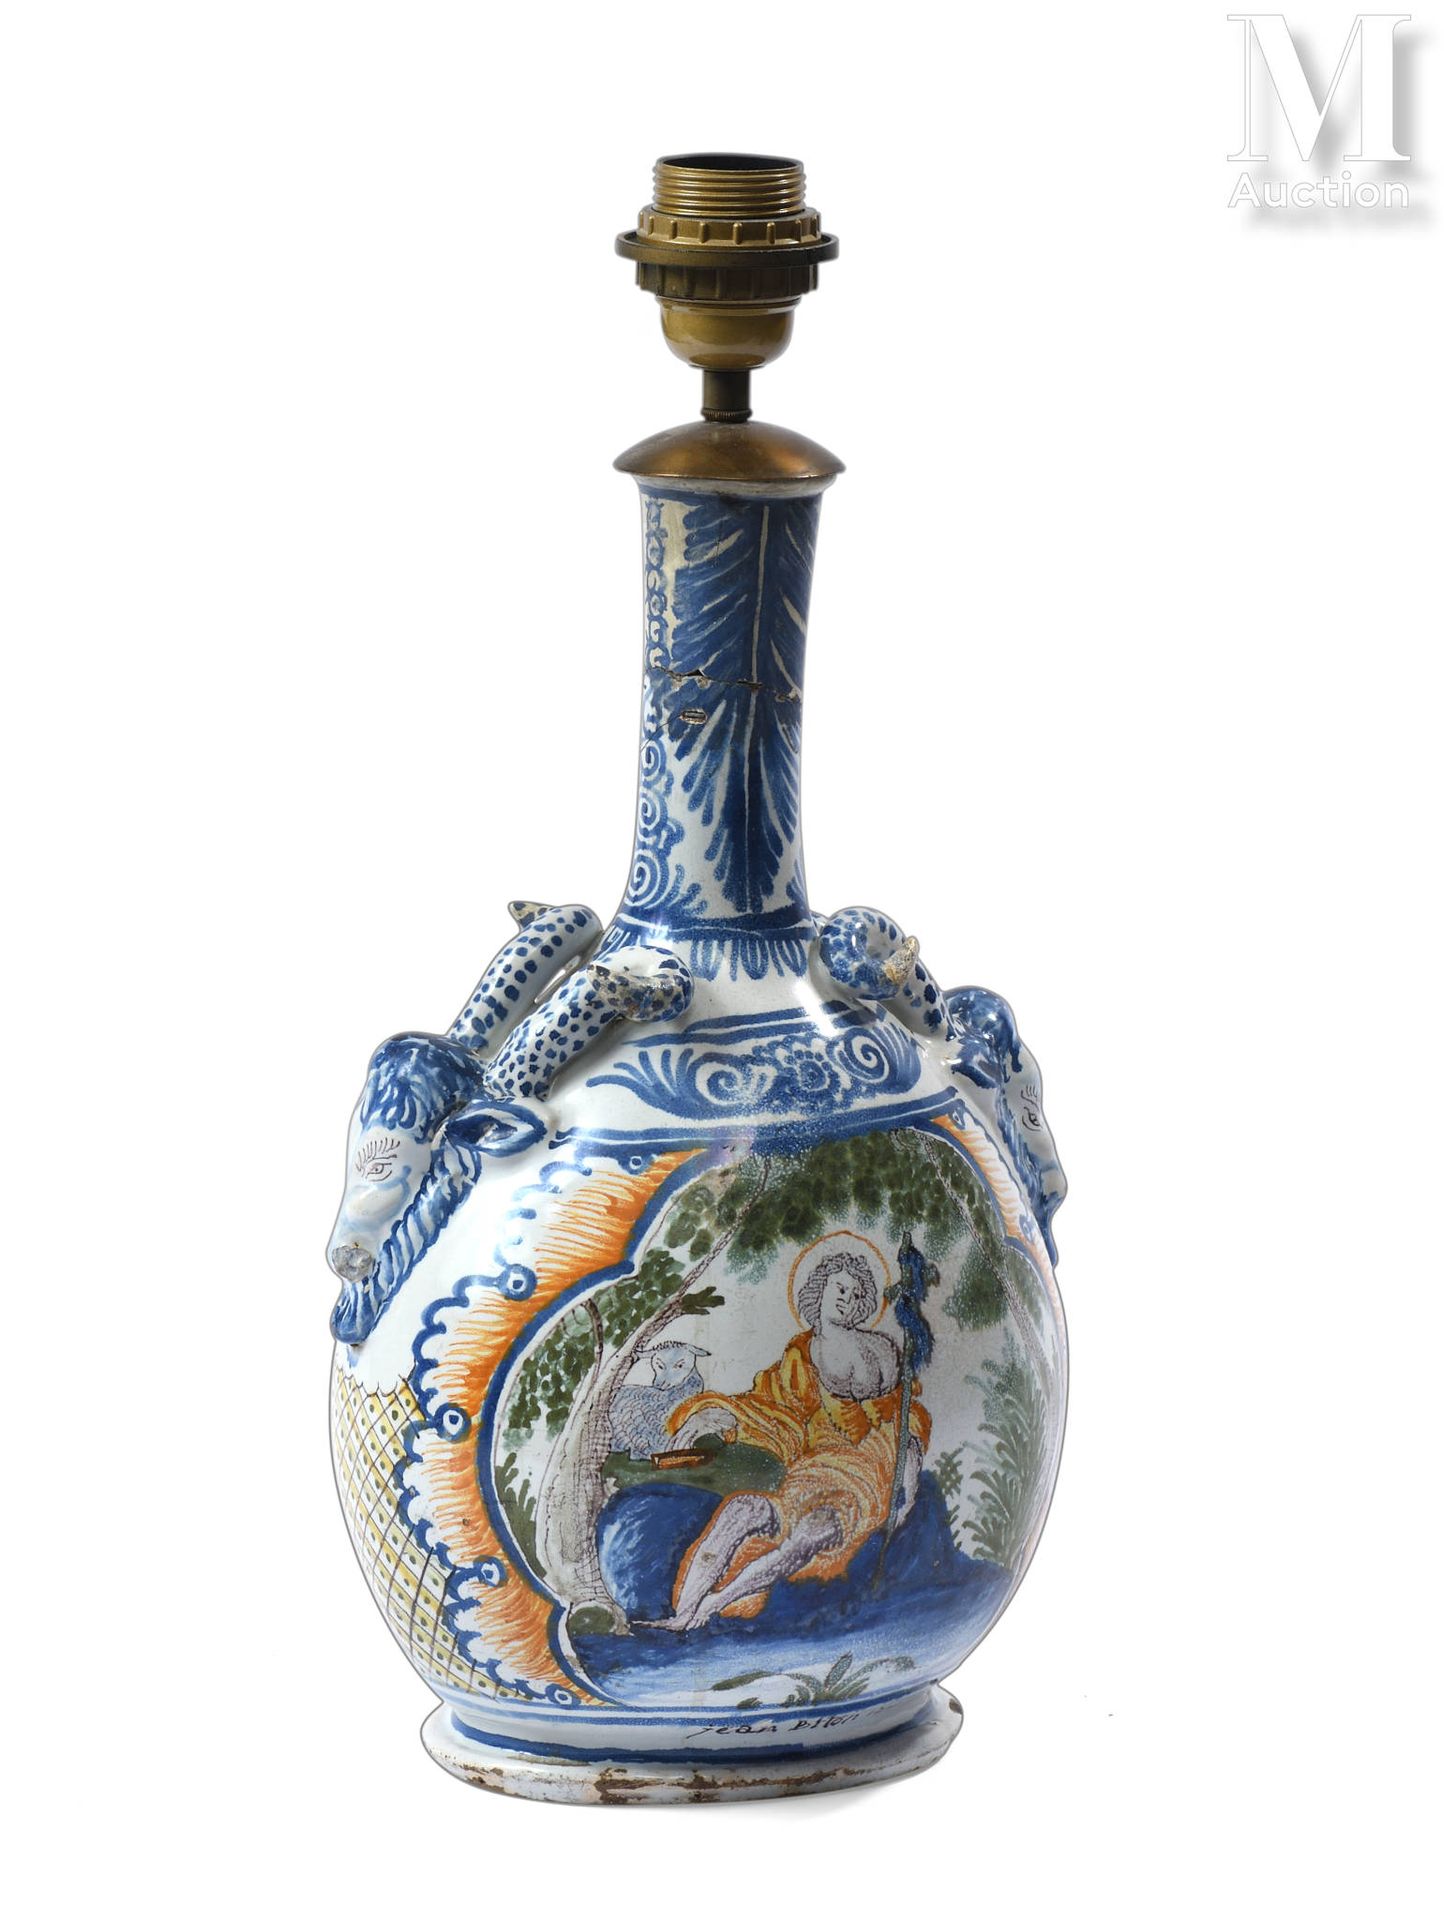 NEVERS 多色陶器花瓶或葫芦，储备装饰有圣约翰和一个工匠。手柄为公羊头形状。
18世纪
高：35厘米
磨损、事故、修复、安装为灯